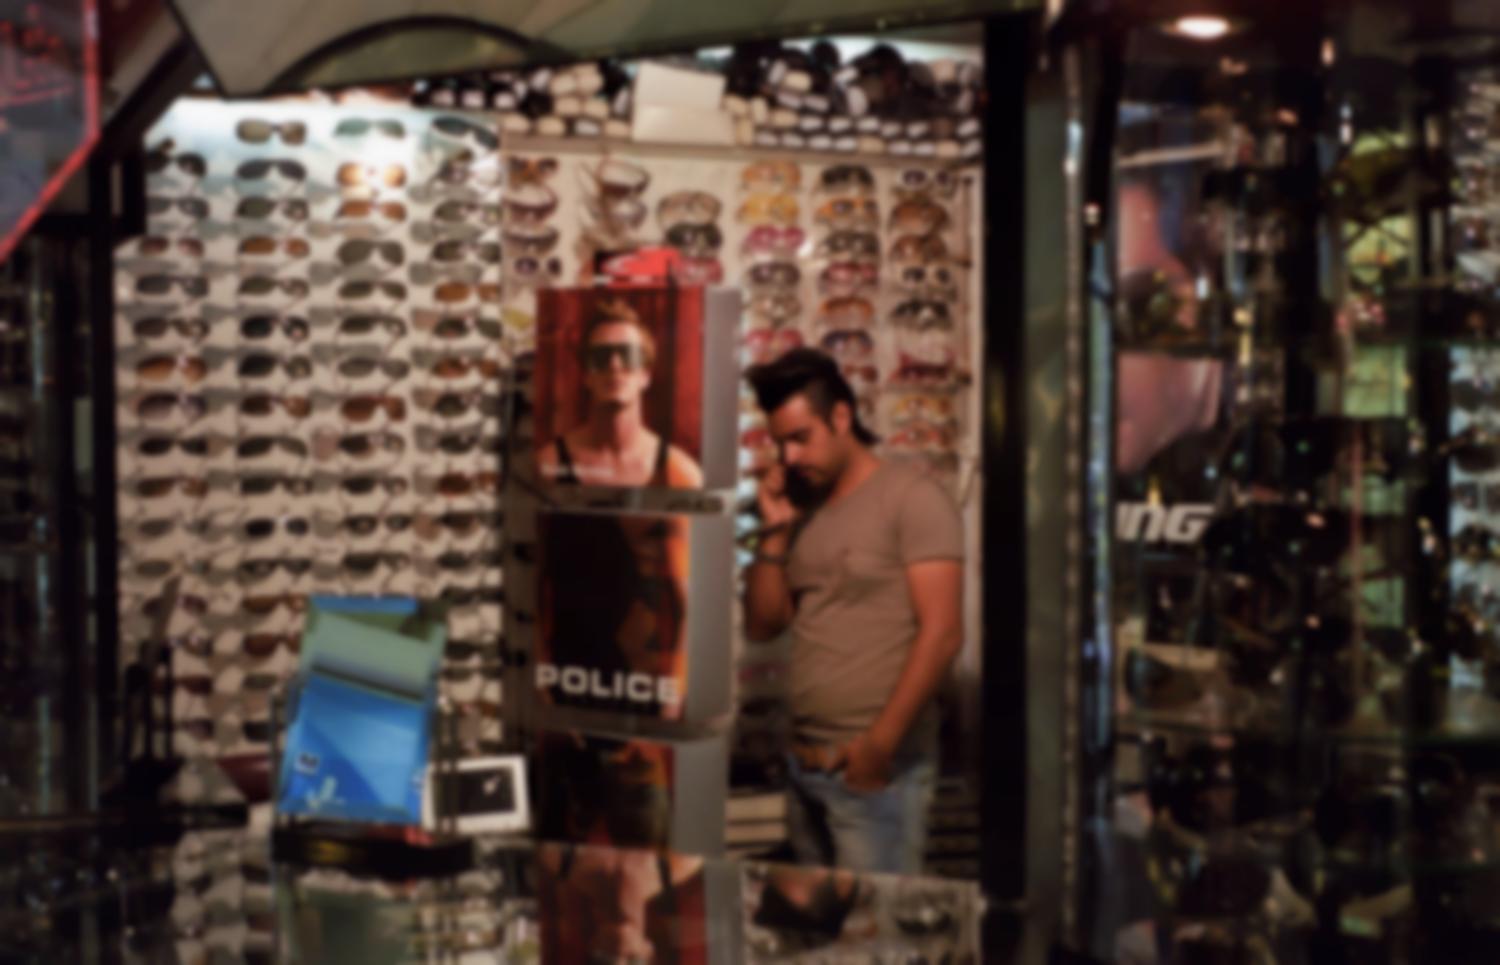 Boutique de lunettes, vendeur en jean, T-shirt, coupe de cheveux à la mode, et publicité avec David Beckham. Iran, septembre 2006.